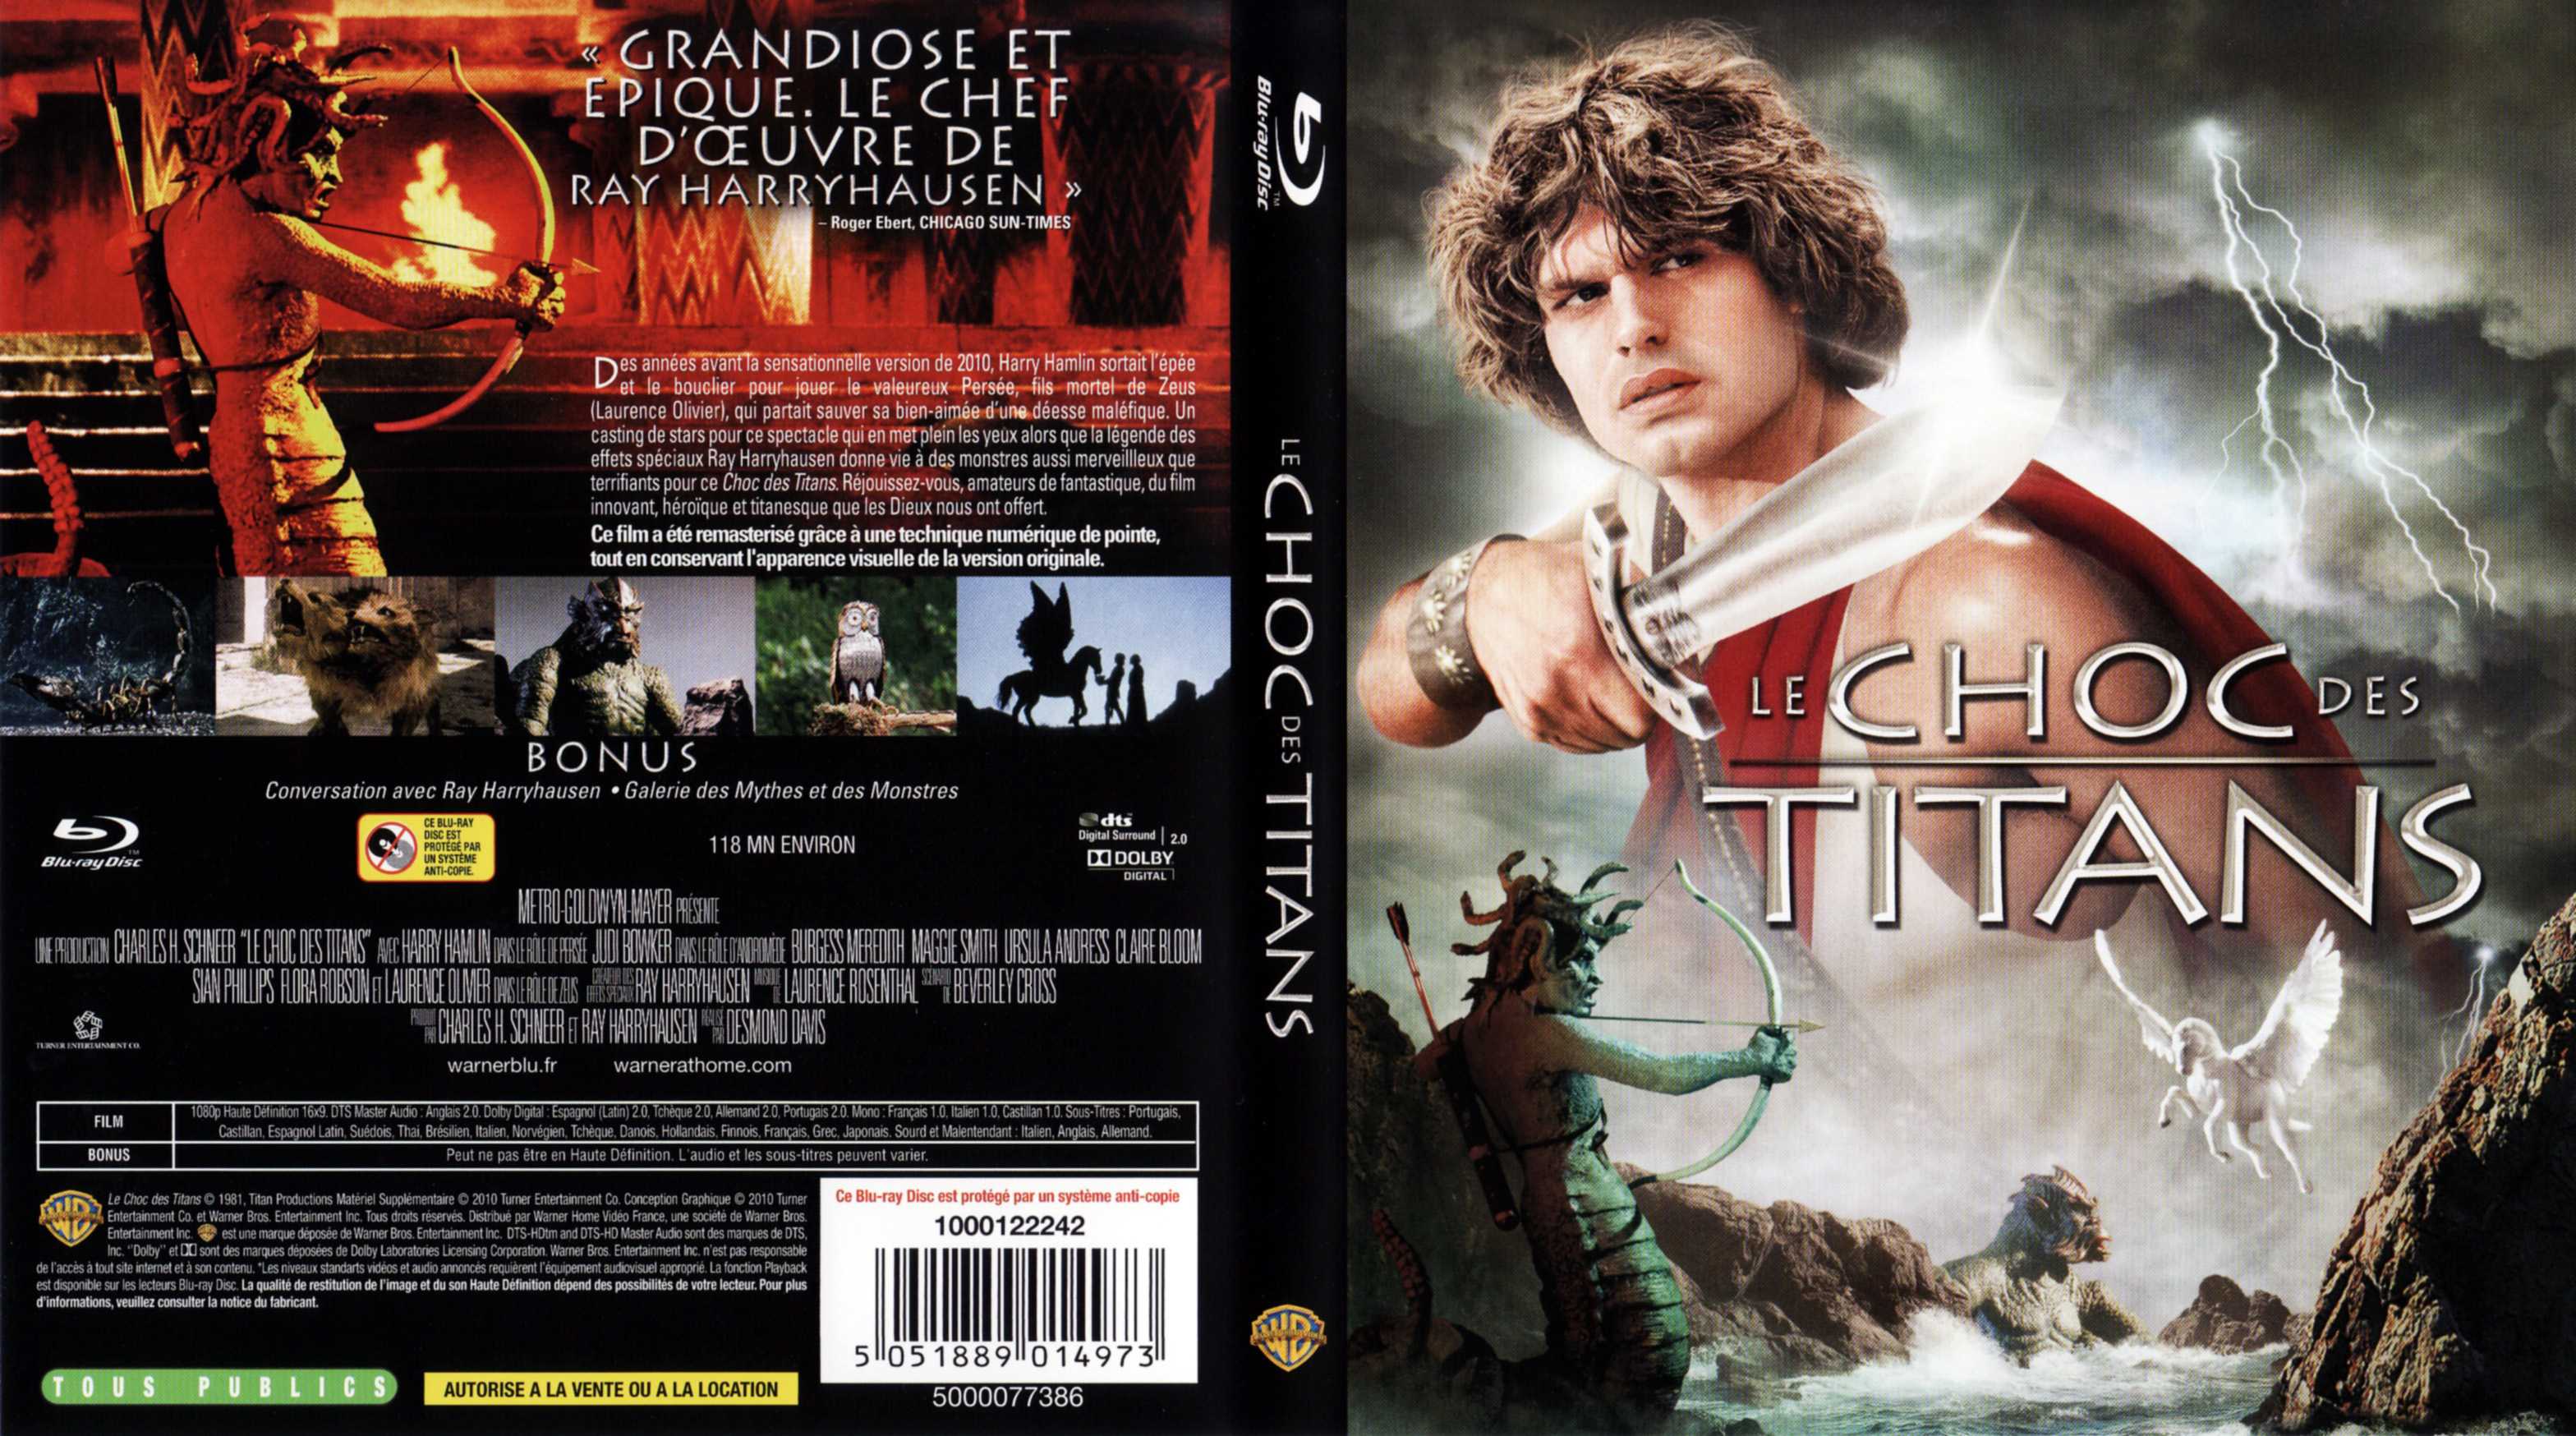 Jaquette DVD Le choc des titans (BLU-RAY)